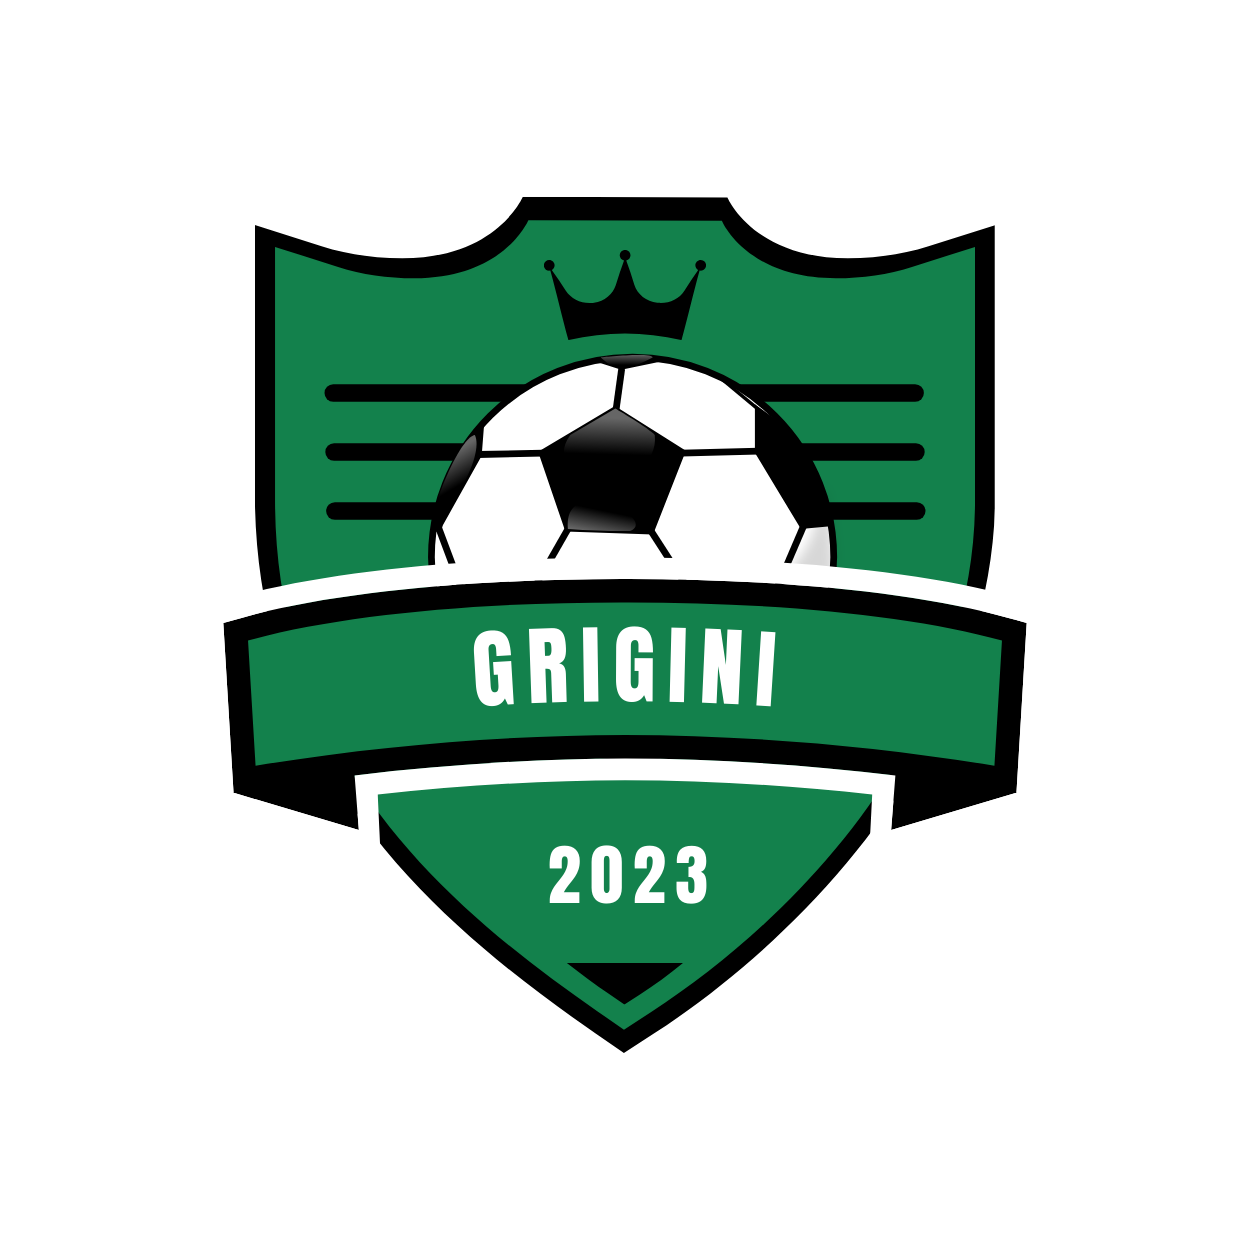 Grigini